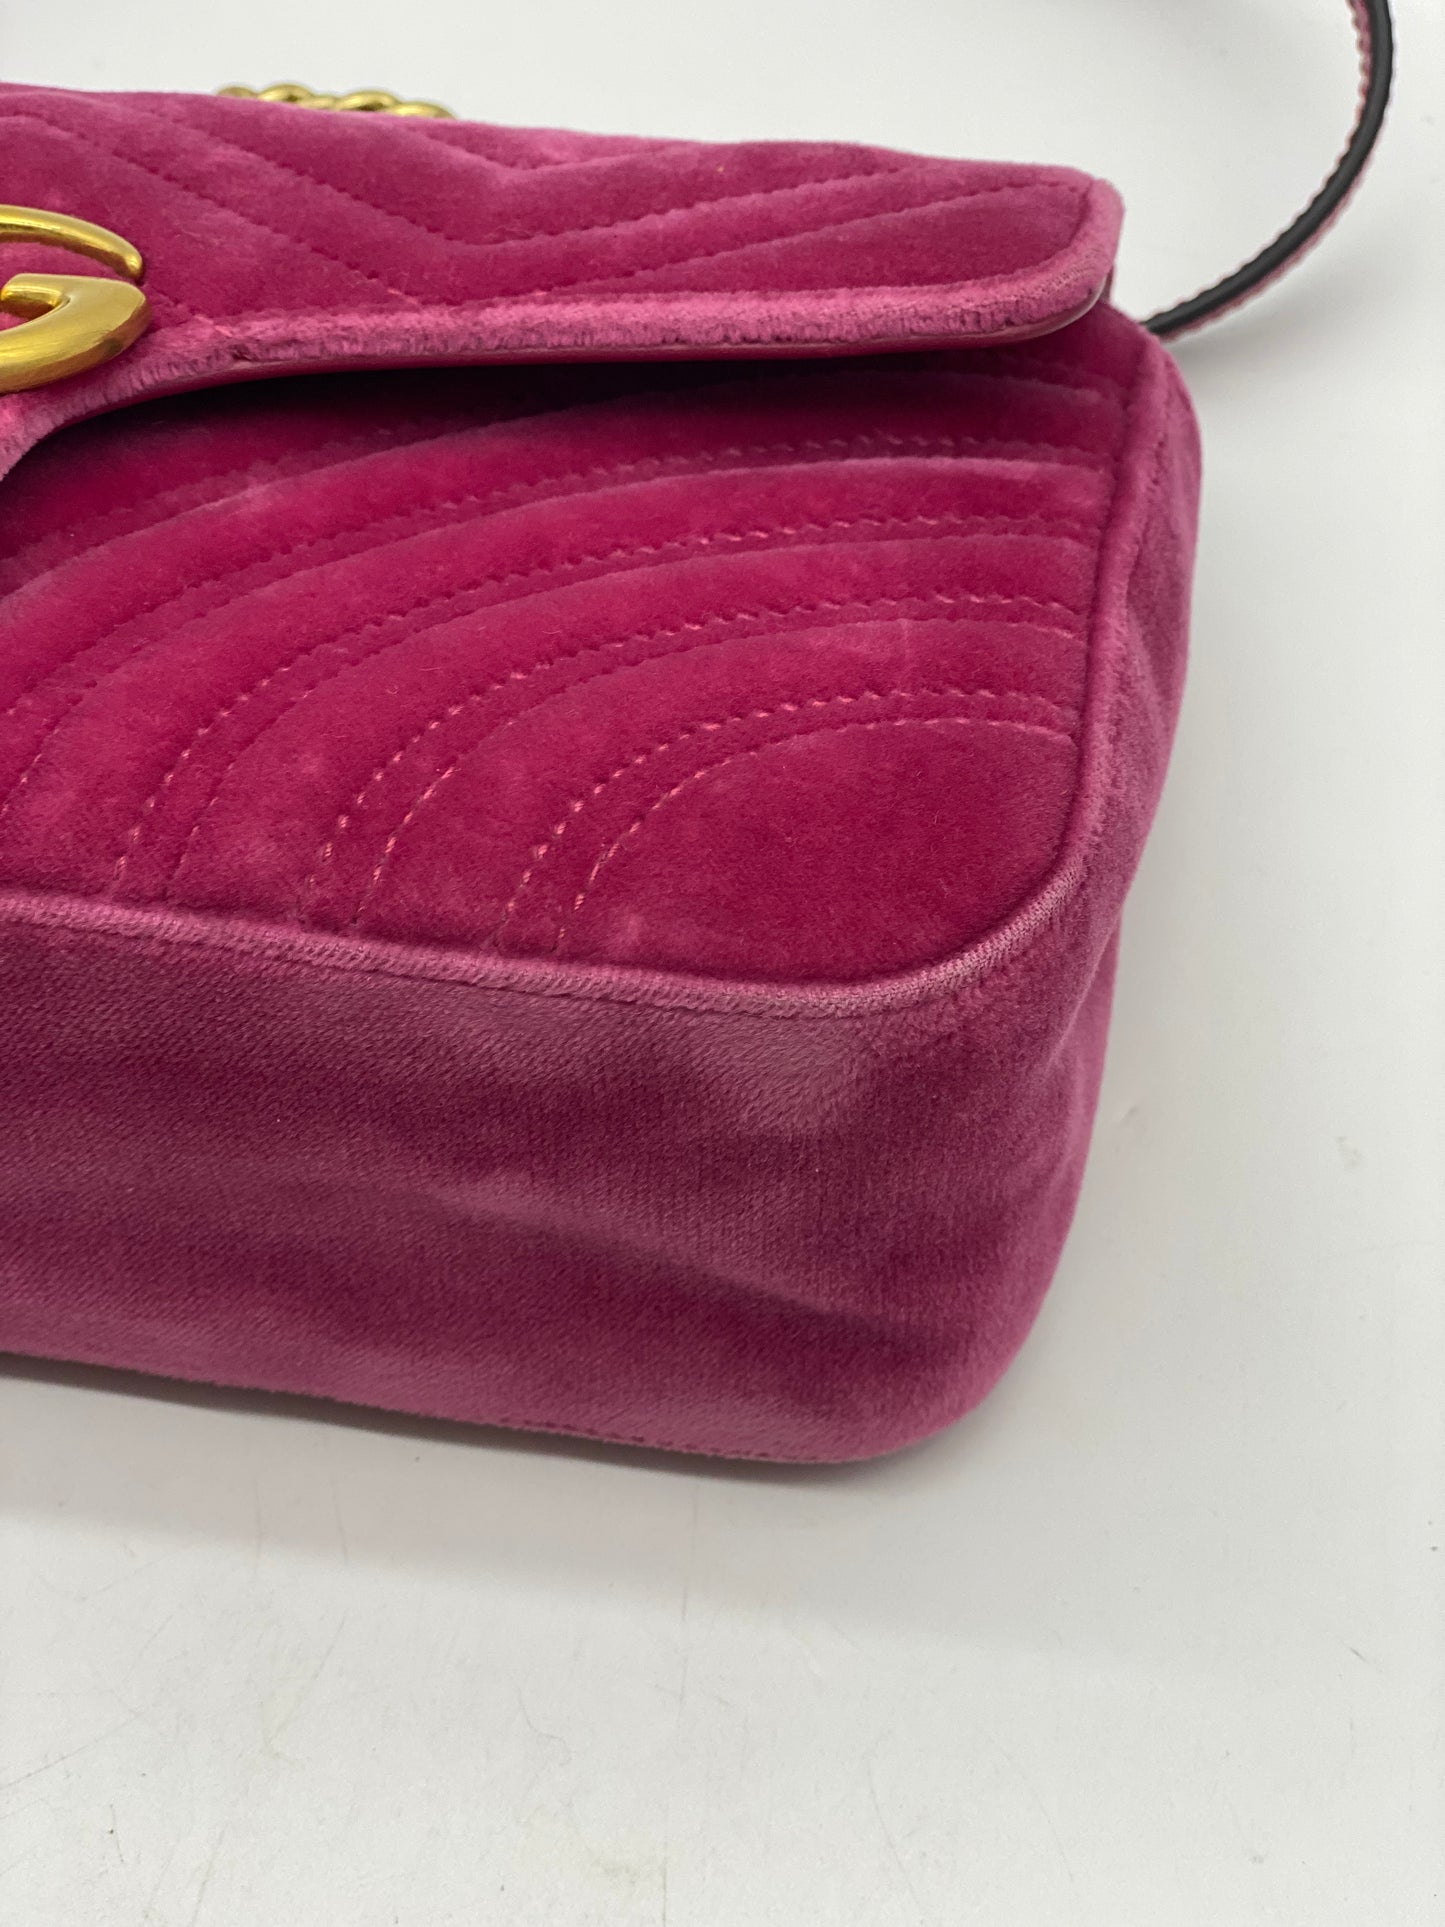 GUCCI Velvet Matelasse Small GG Marmont Shoulder Bag Light Raspberry Rose